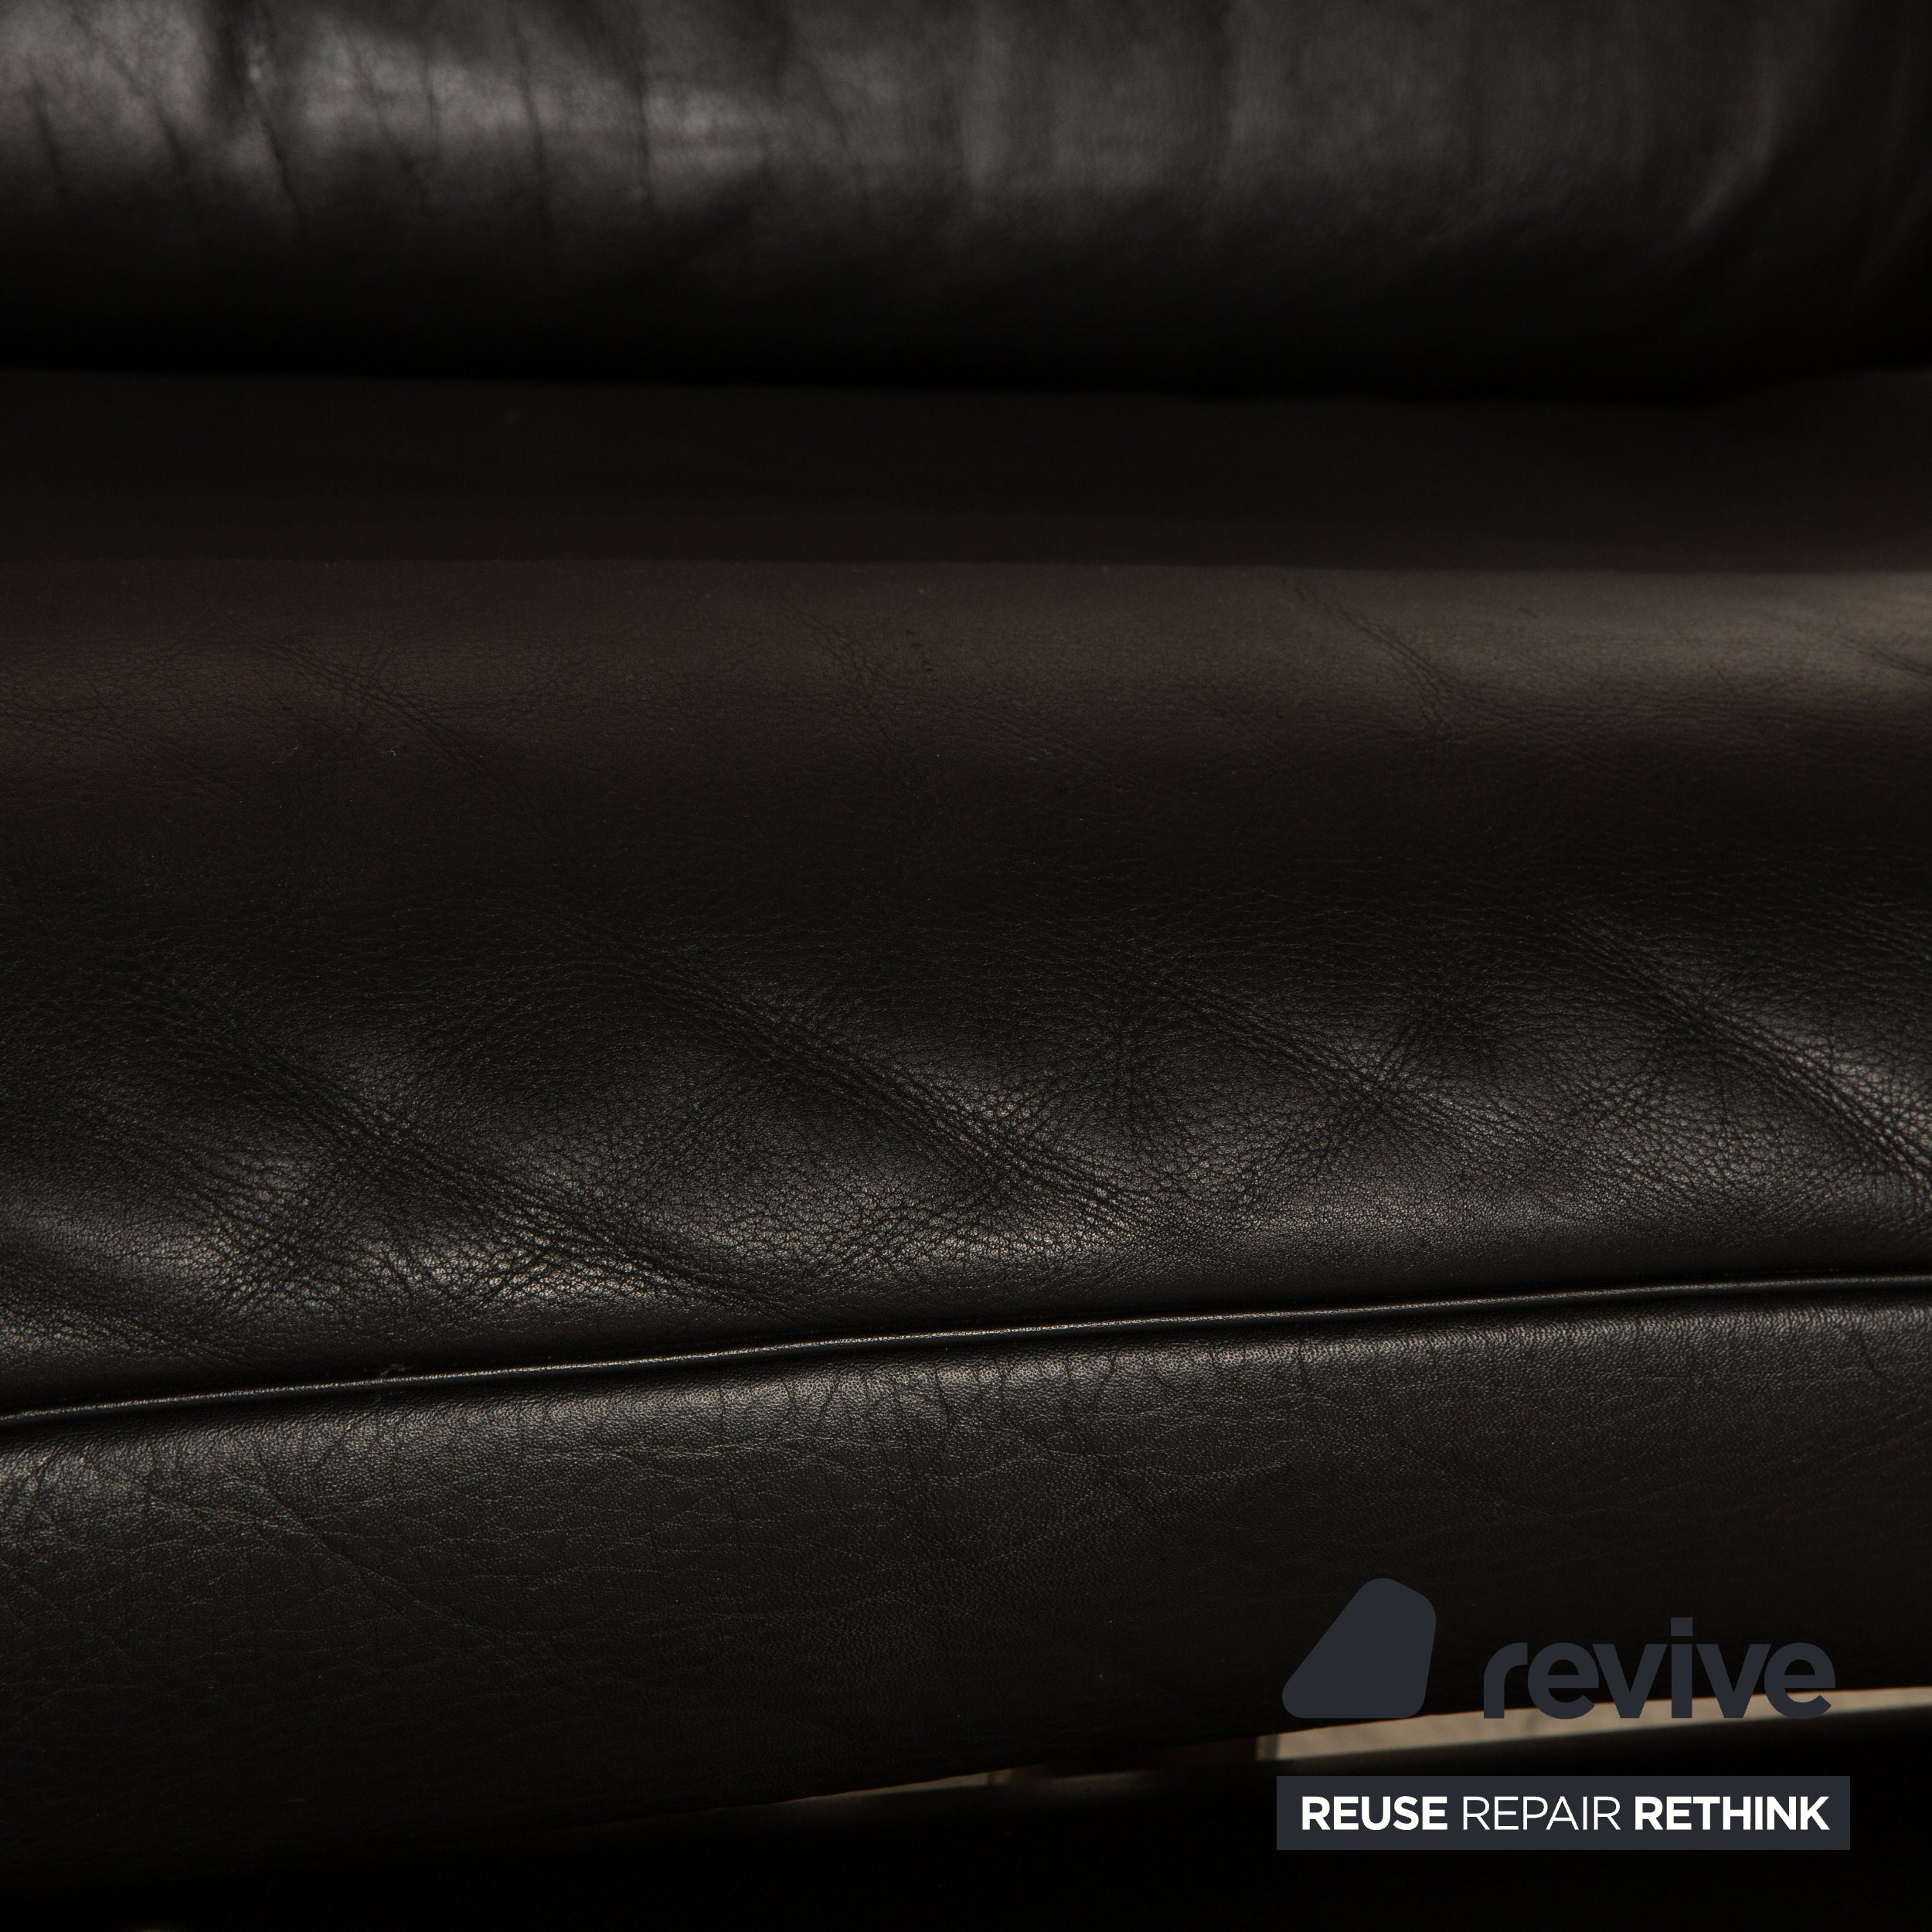 de Sede ds 140 Leder Zweisitzer Rot Schwarz manuelle Funktion Sofa Couch